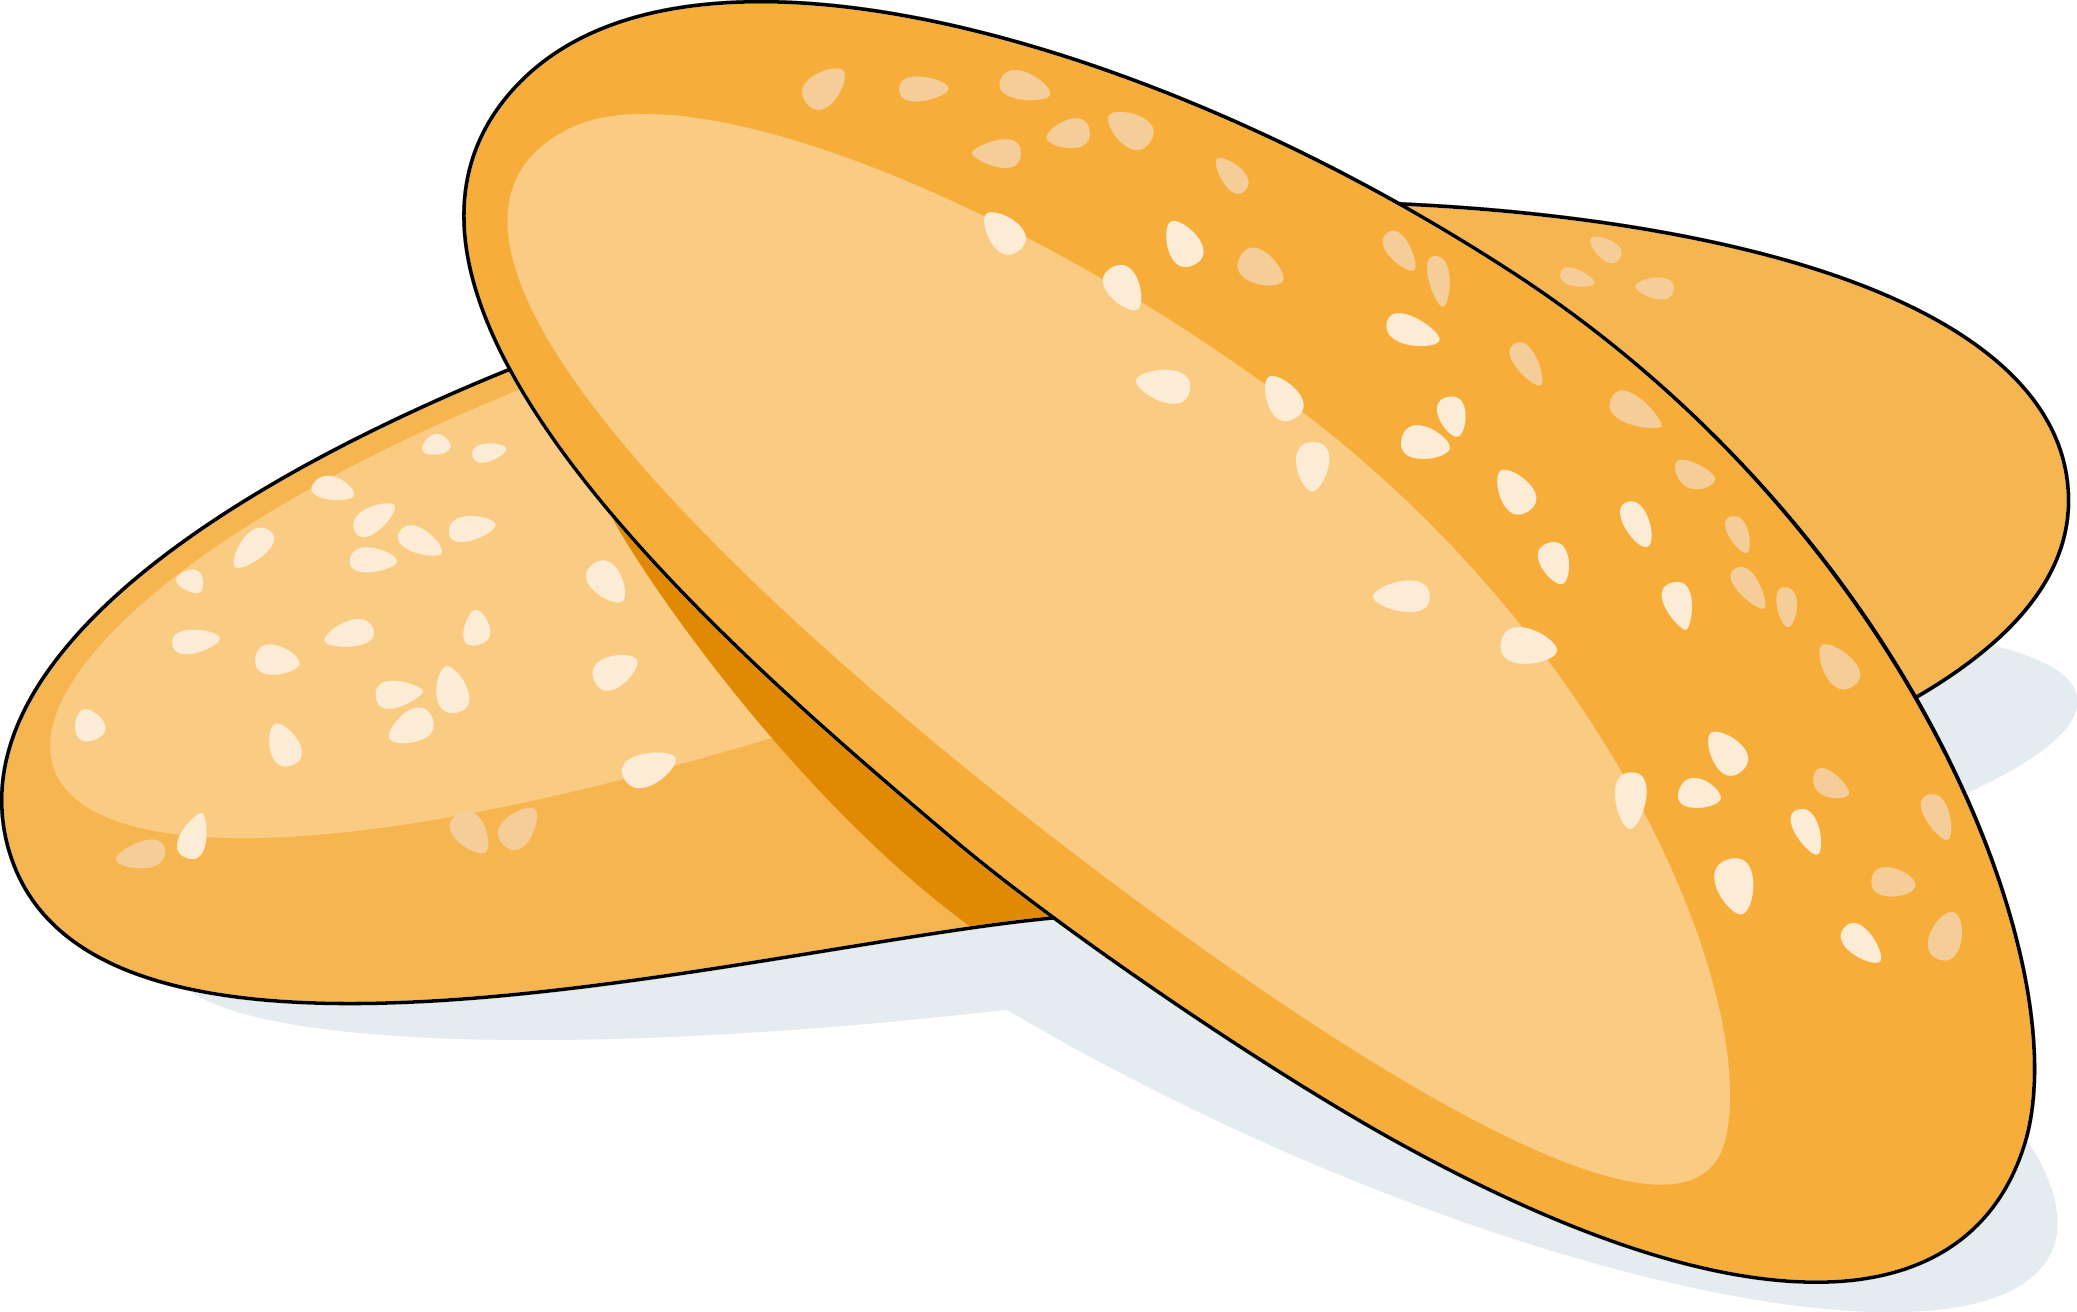 Baguette Breadstick Crispbread Pan De Jamxf3n - Bread (2077x1312)